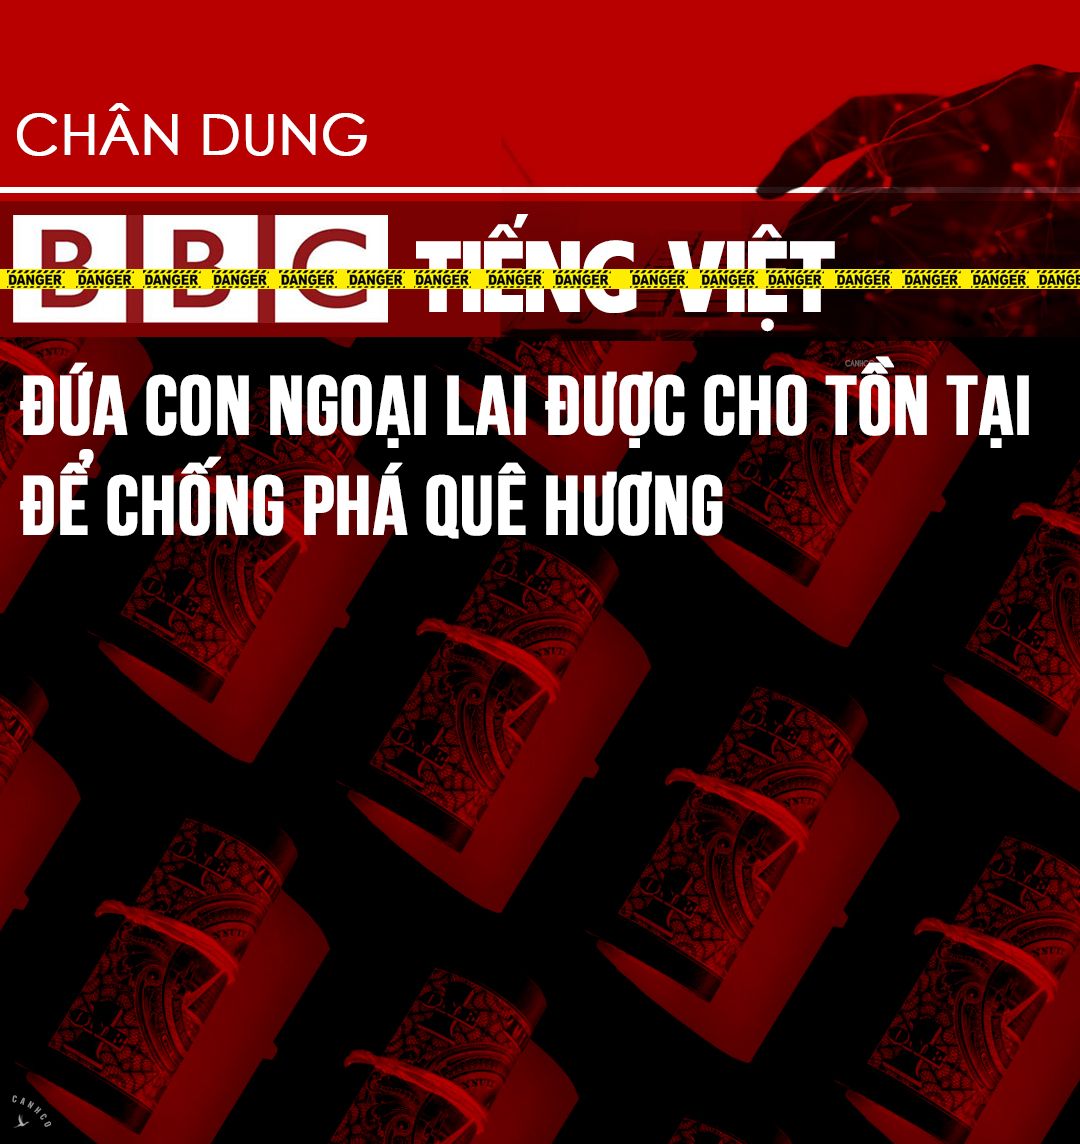 Chân dung BBC Tiếng Việt: Đứa con ngoại lai được cho tồn tại để chống phá quê hương